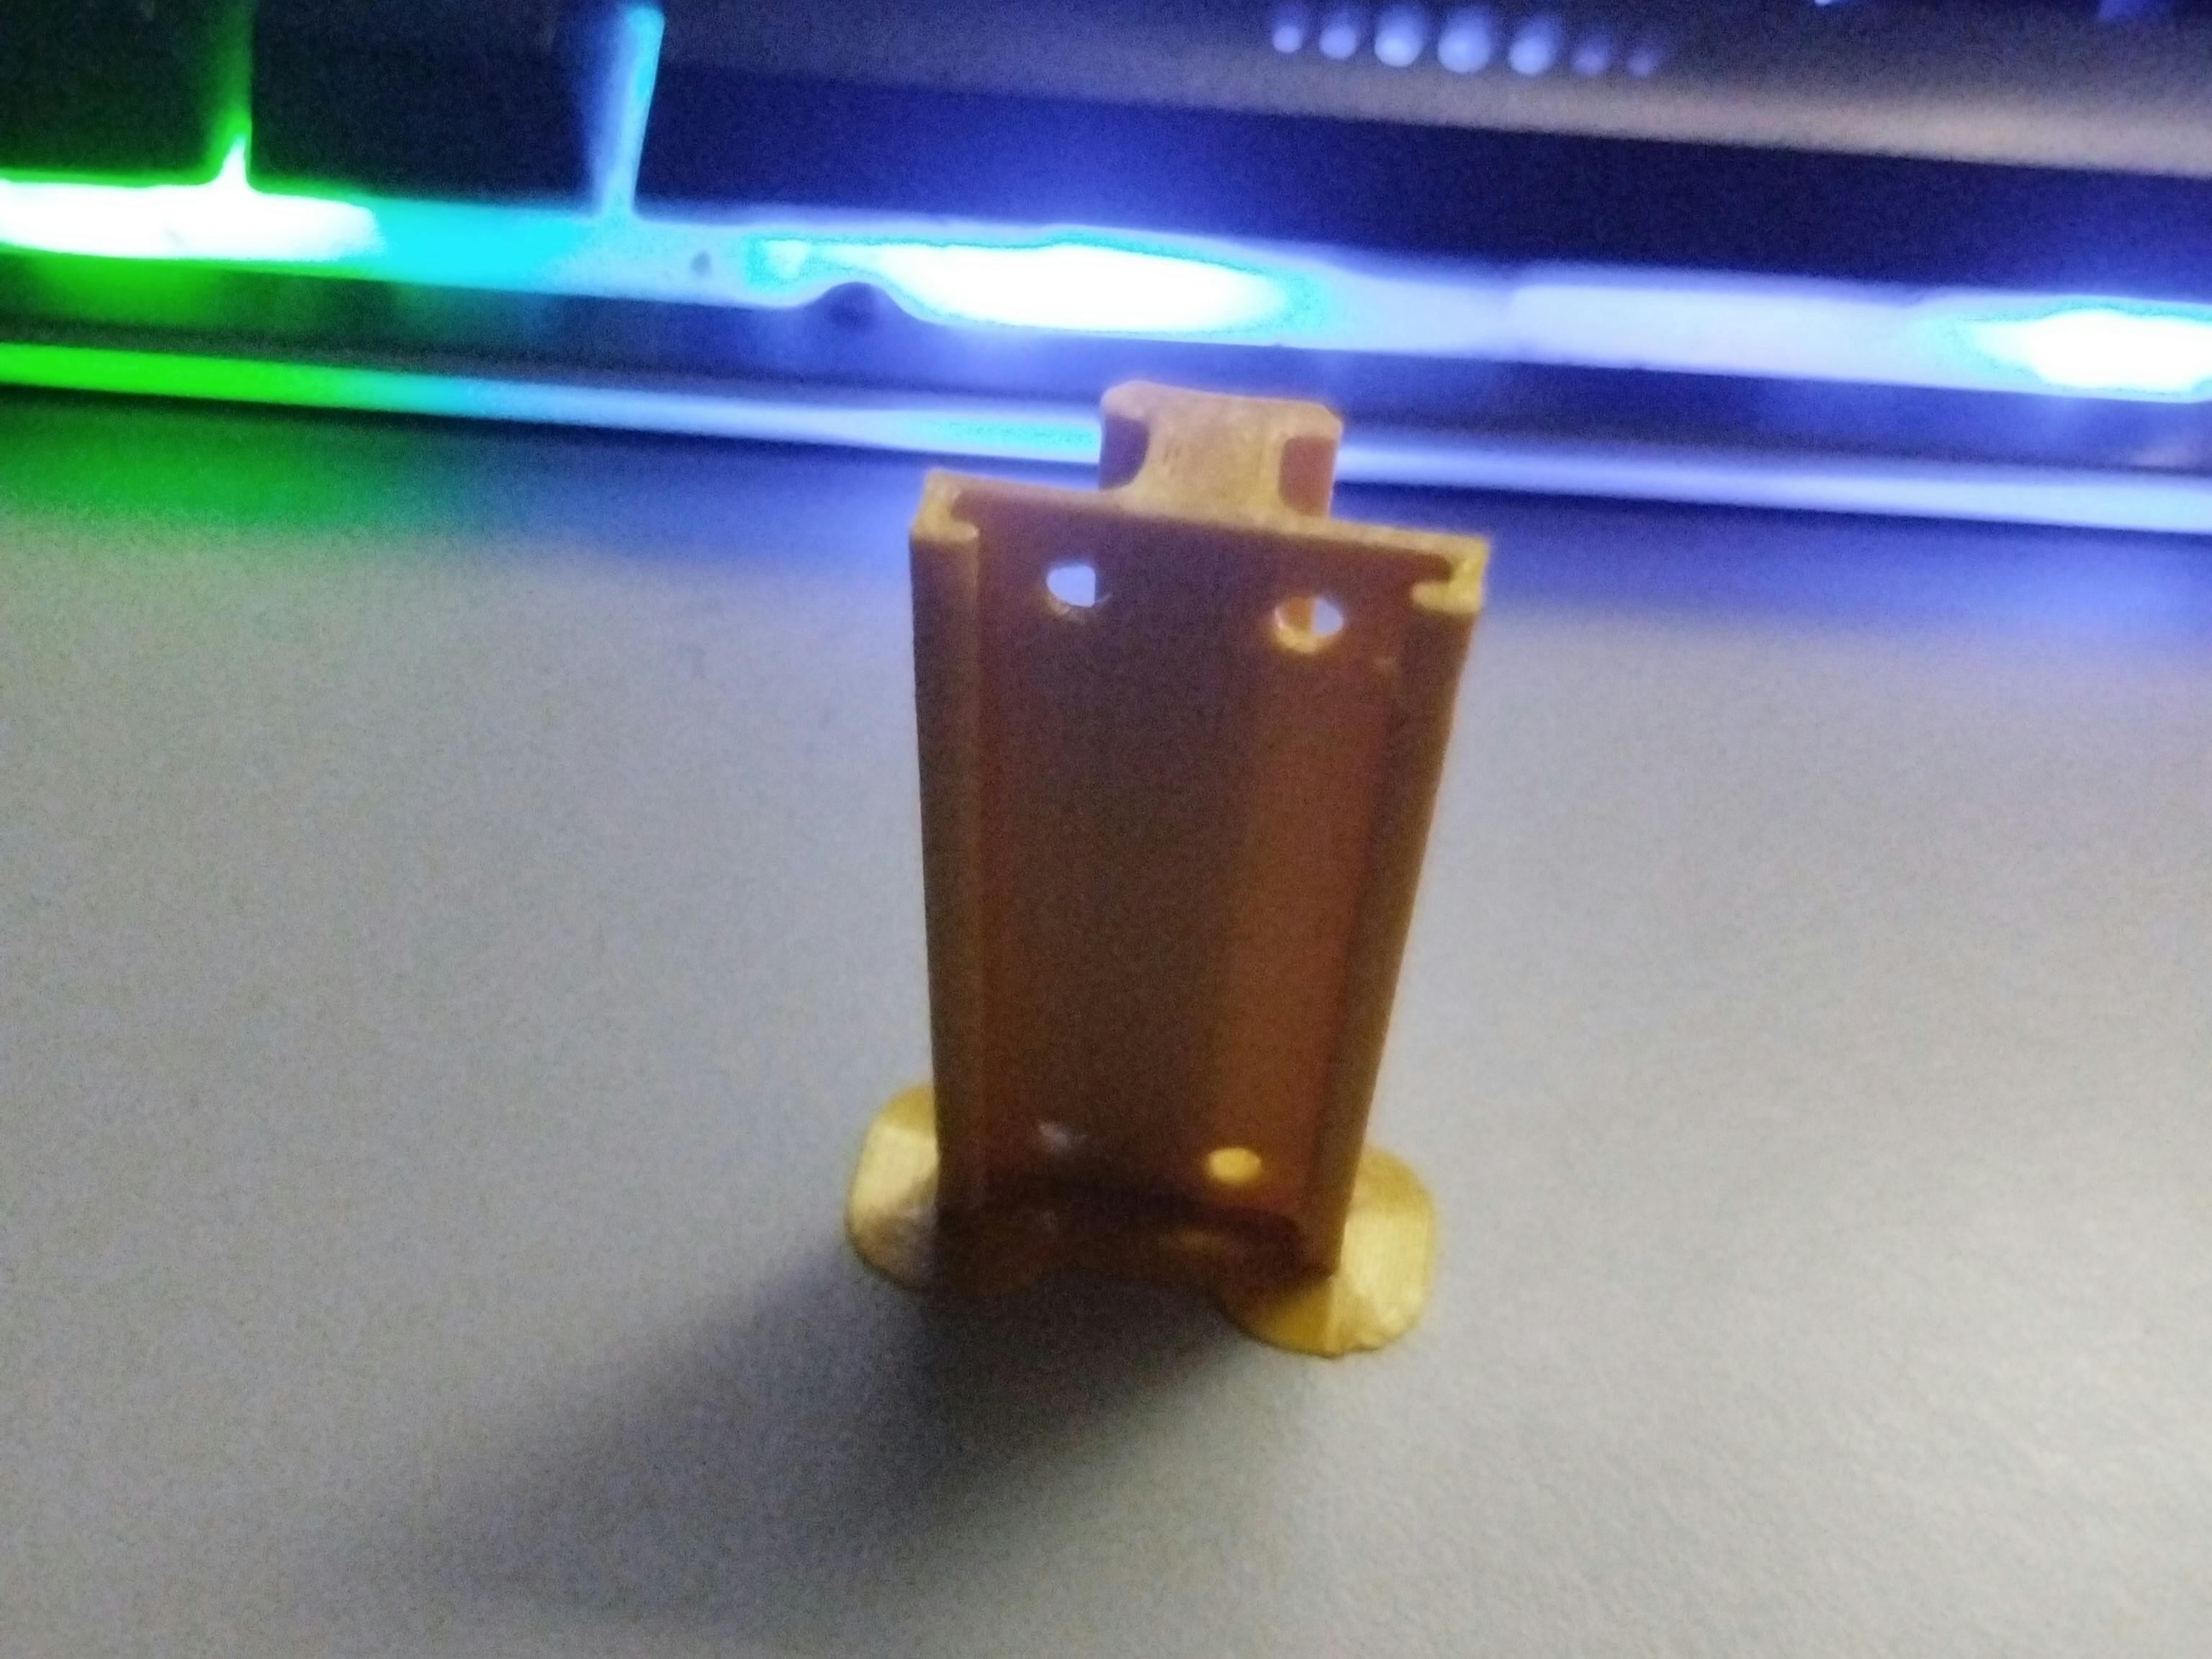 LED holder printed